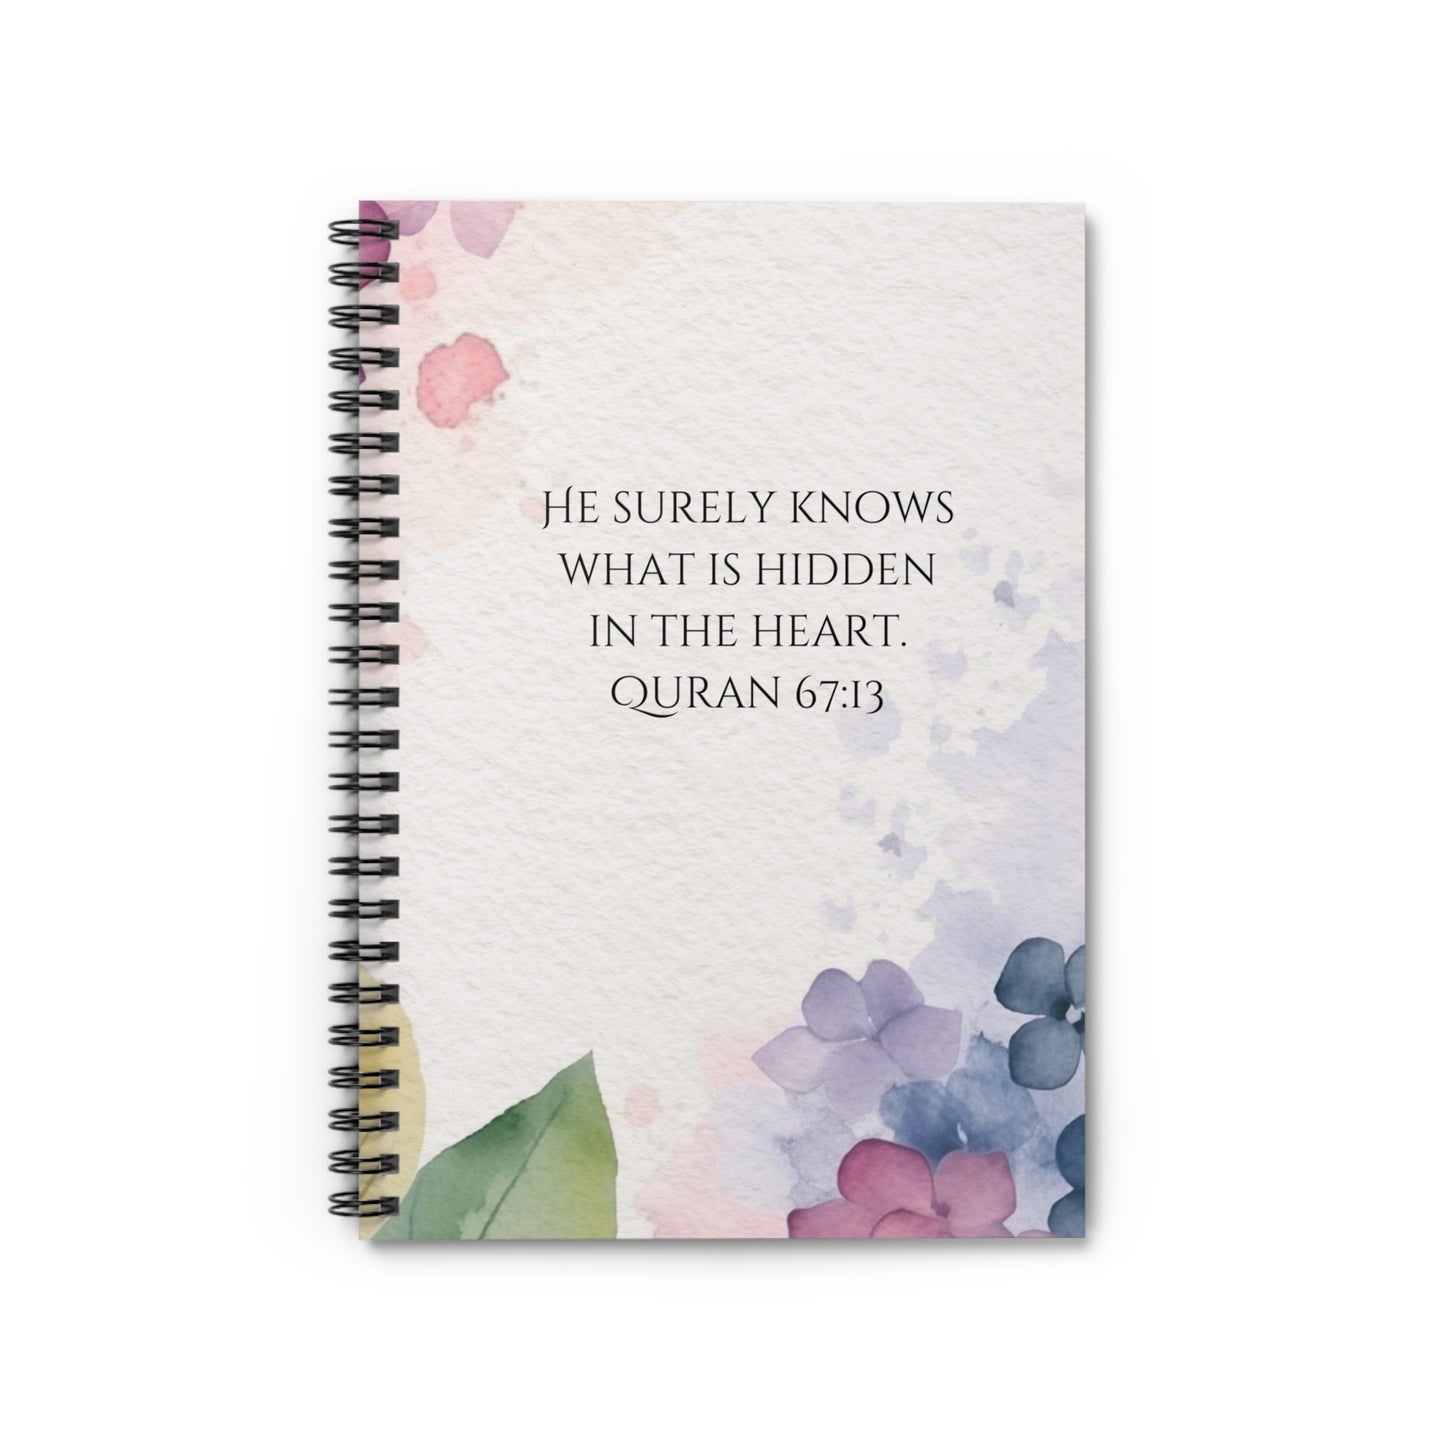 Quran 67:13 Islamic Journal Notebook